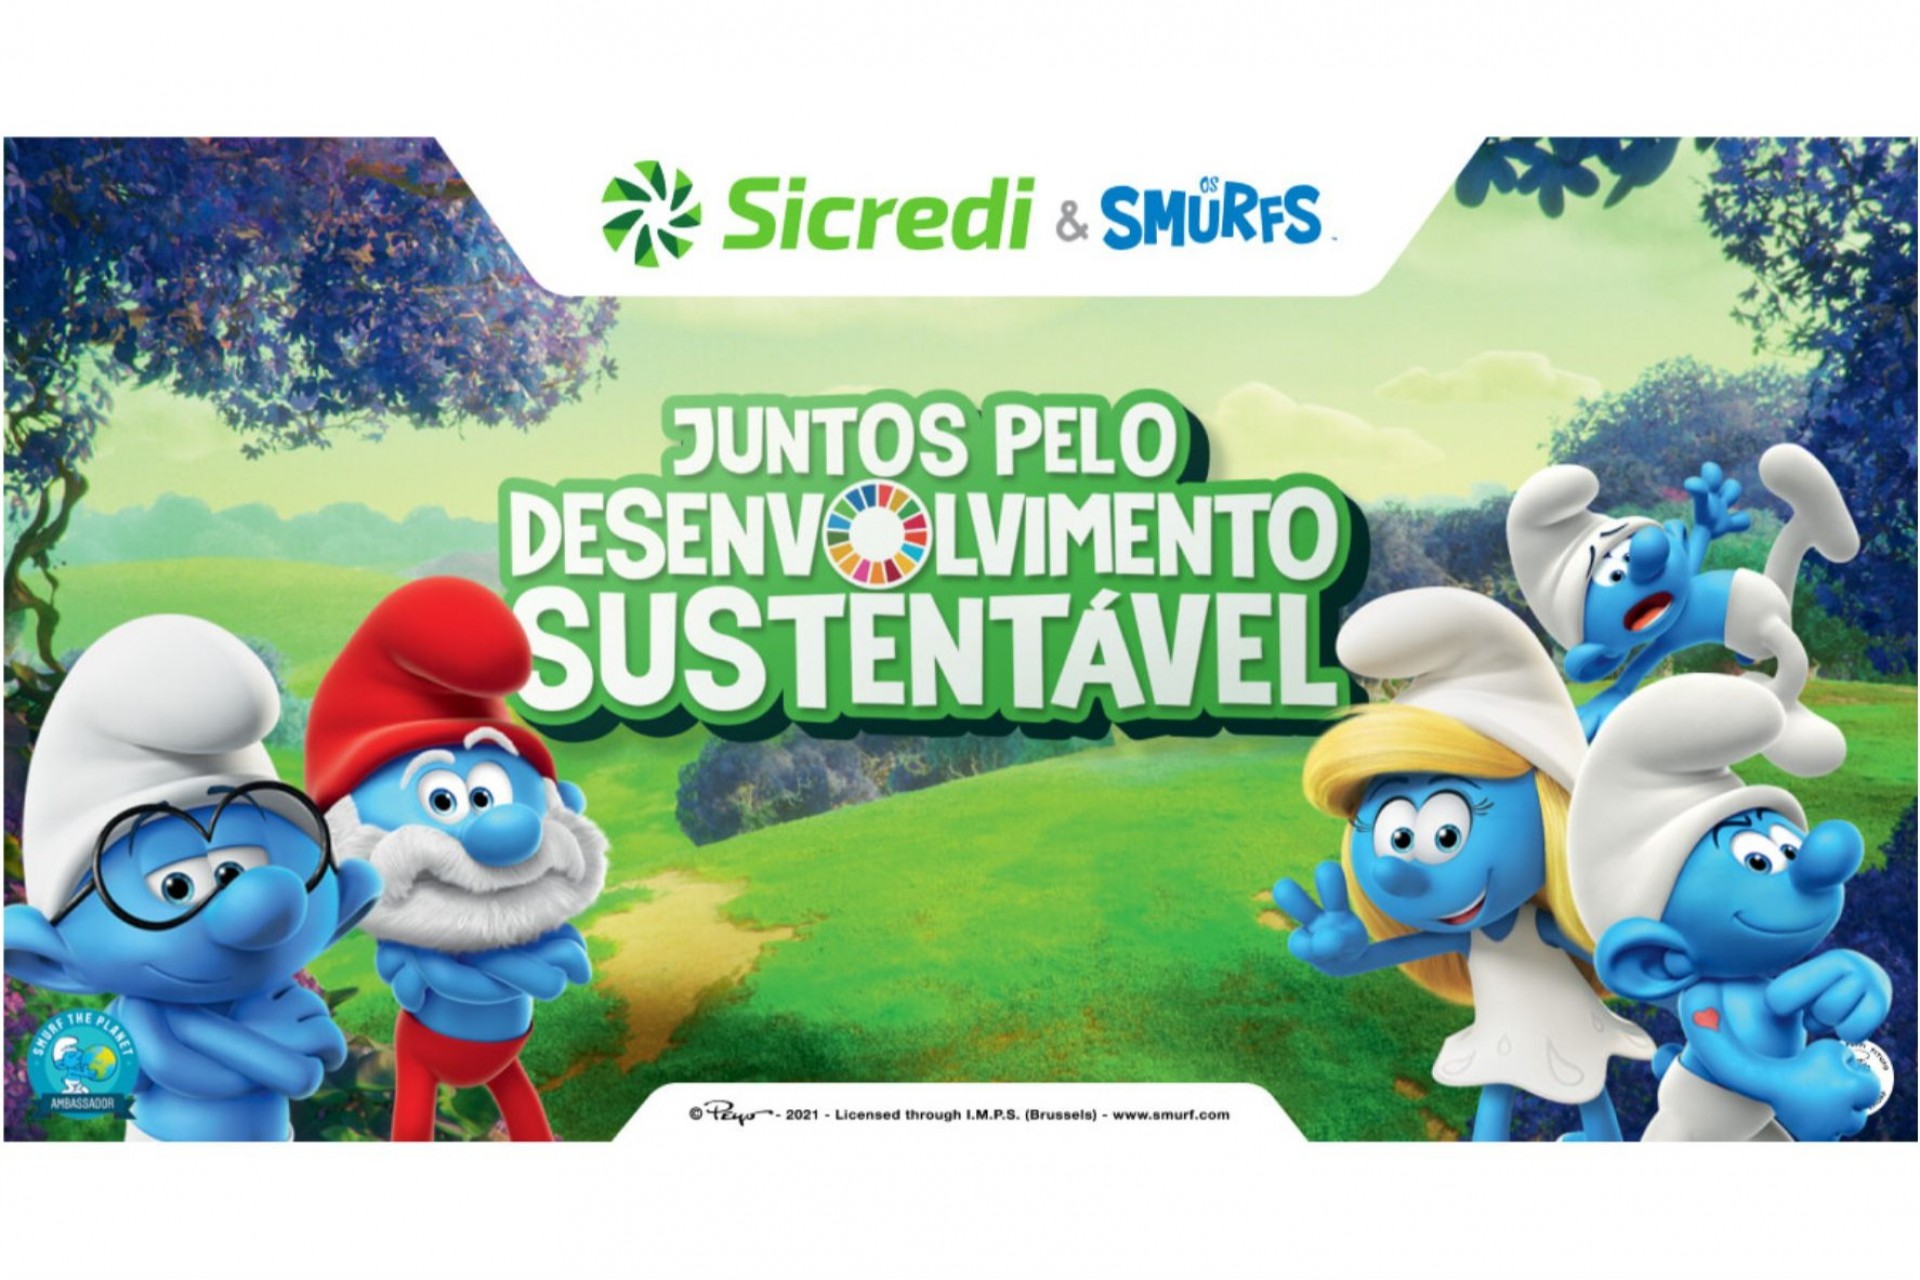 Sicredi e Smurfs se unem para promoção dos Objetivos de Desenvolvimento Sustentável